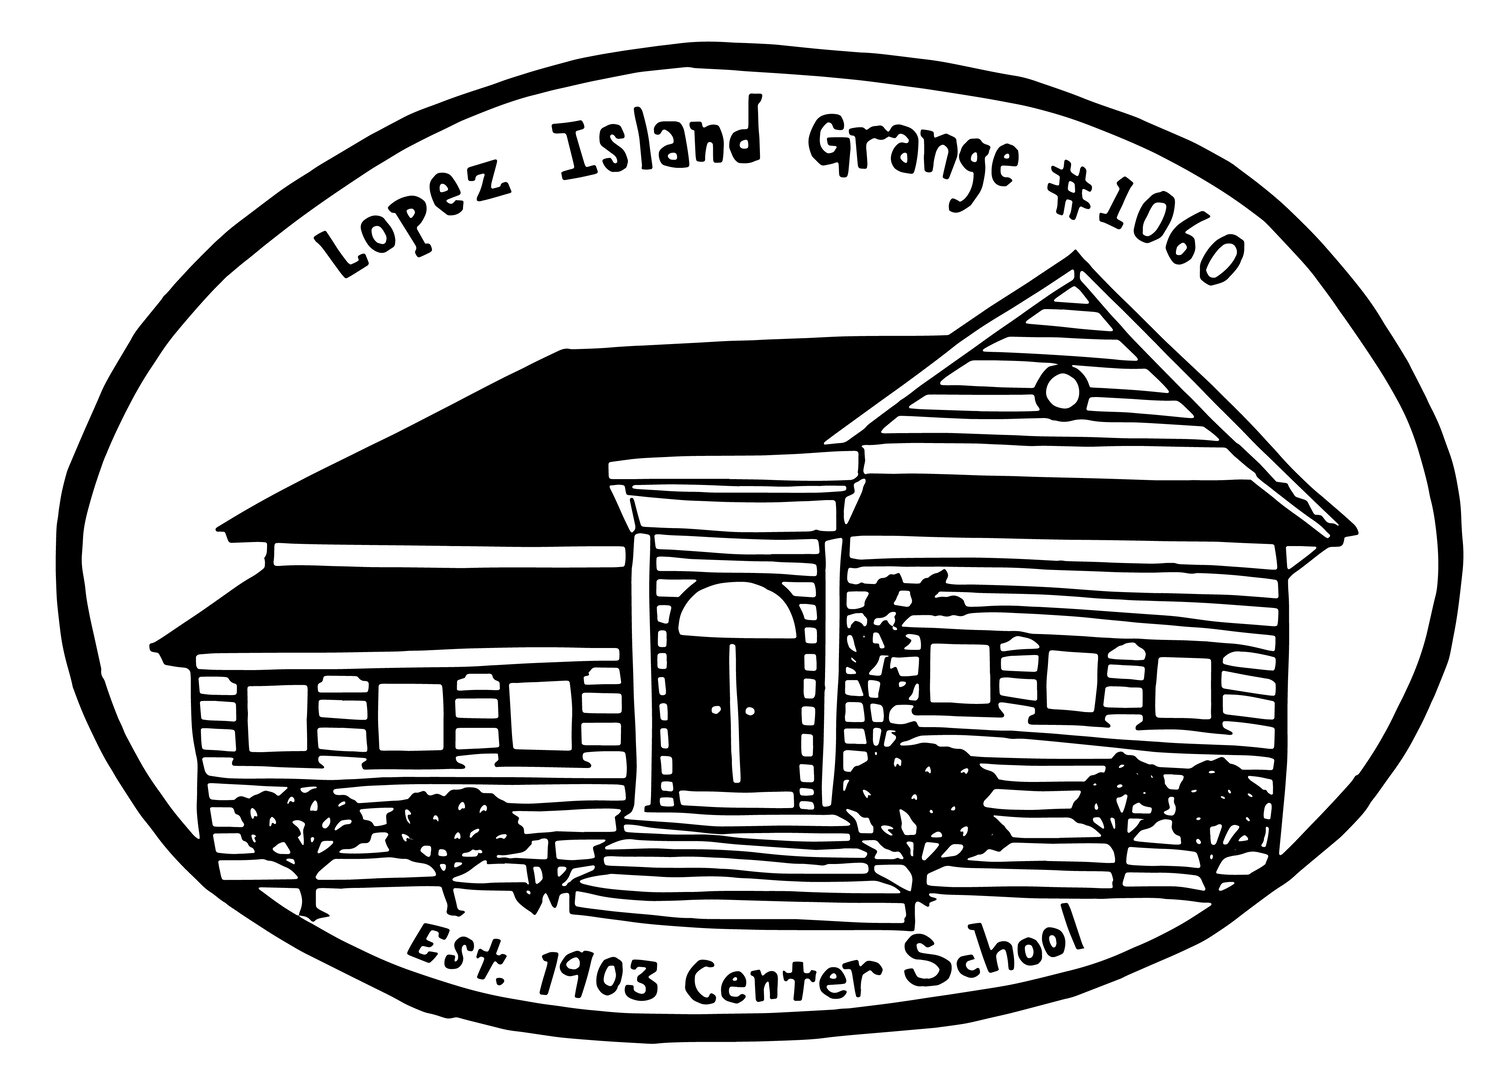 Lopez Island Grange #1060